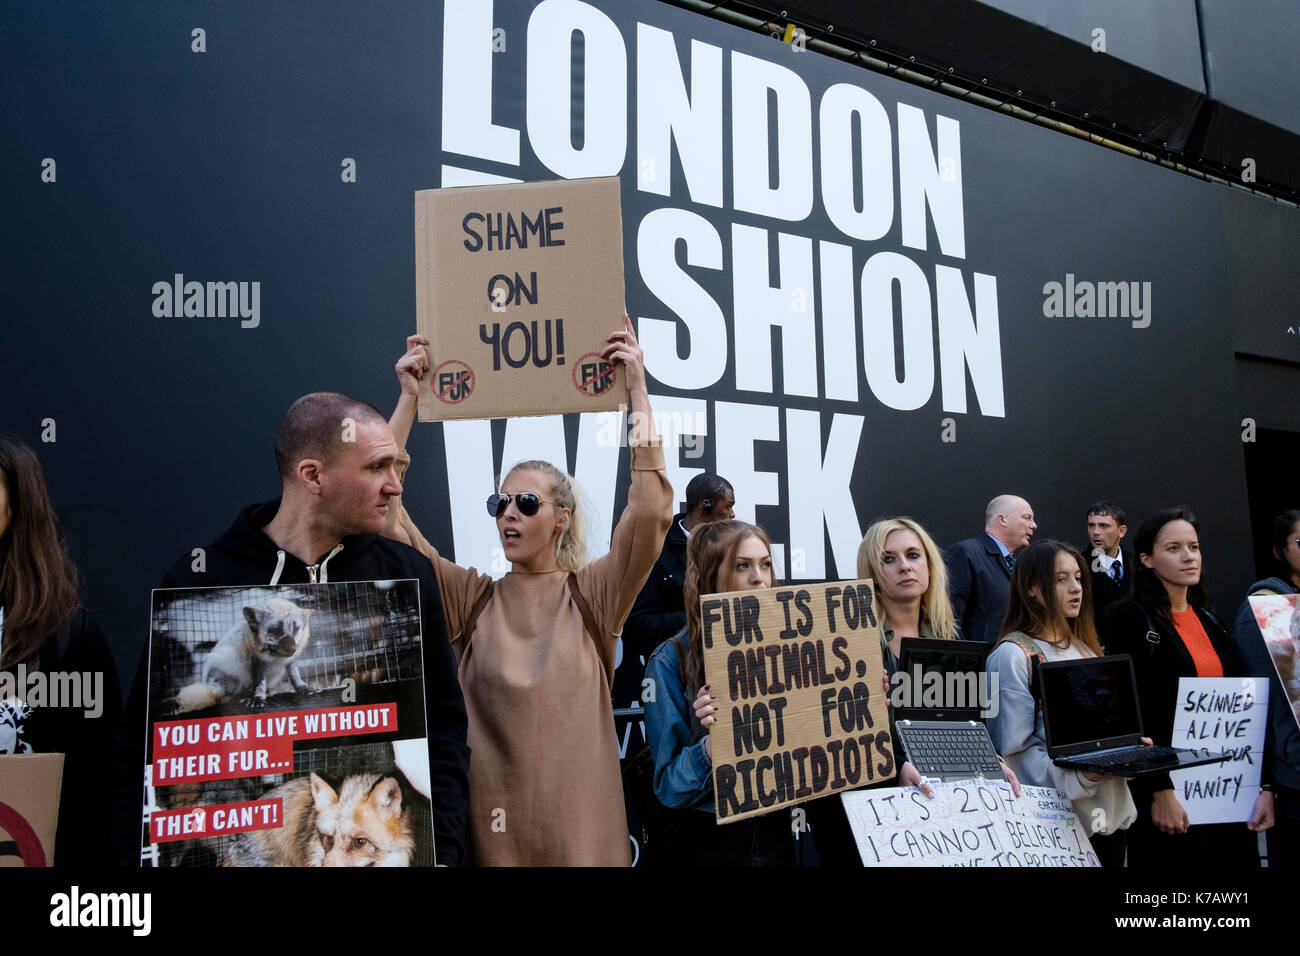 Londres, Royaume-Uni. 15 Septembre 2017 Les défenseurs des droits des animaux manifestation devant le lieu de la Semaine de la mode de Londres à l'utilisation de la fourrure dans l'industrie de la mode Banque D'Images